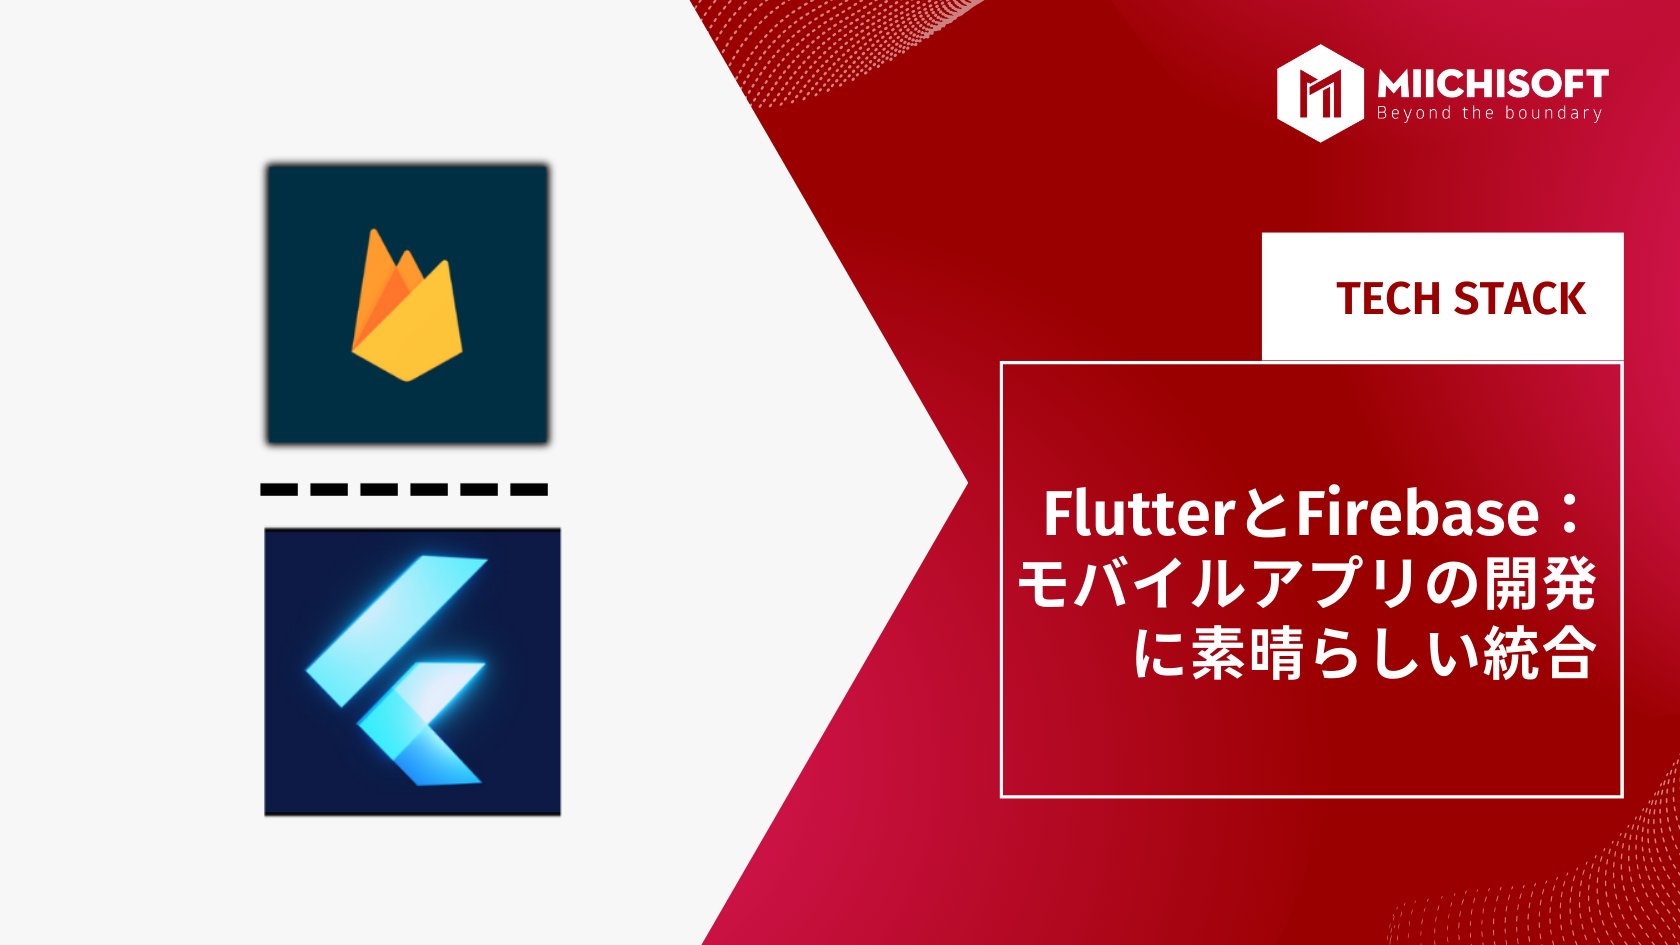 FlutterとFirebase：モバイルアプリの開発に素晴らしい統合